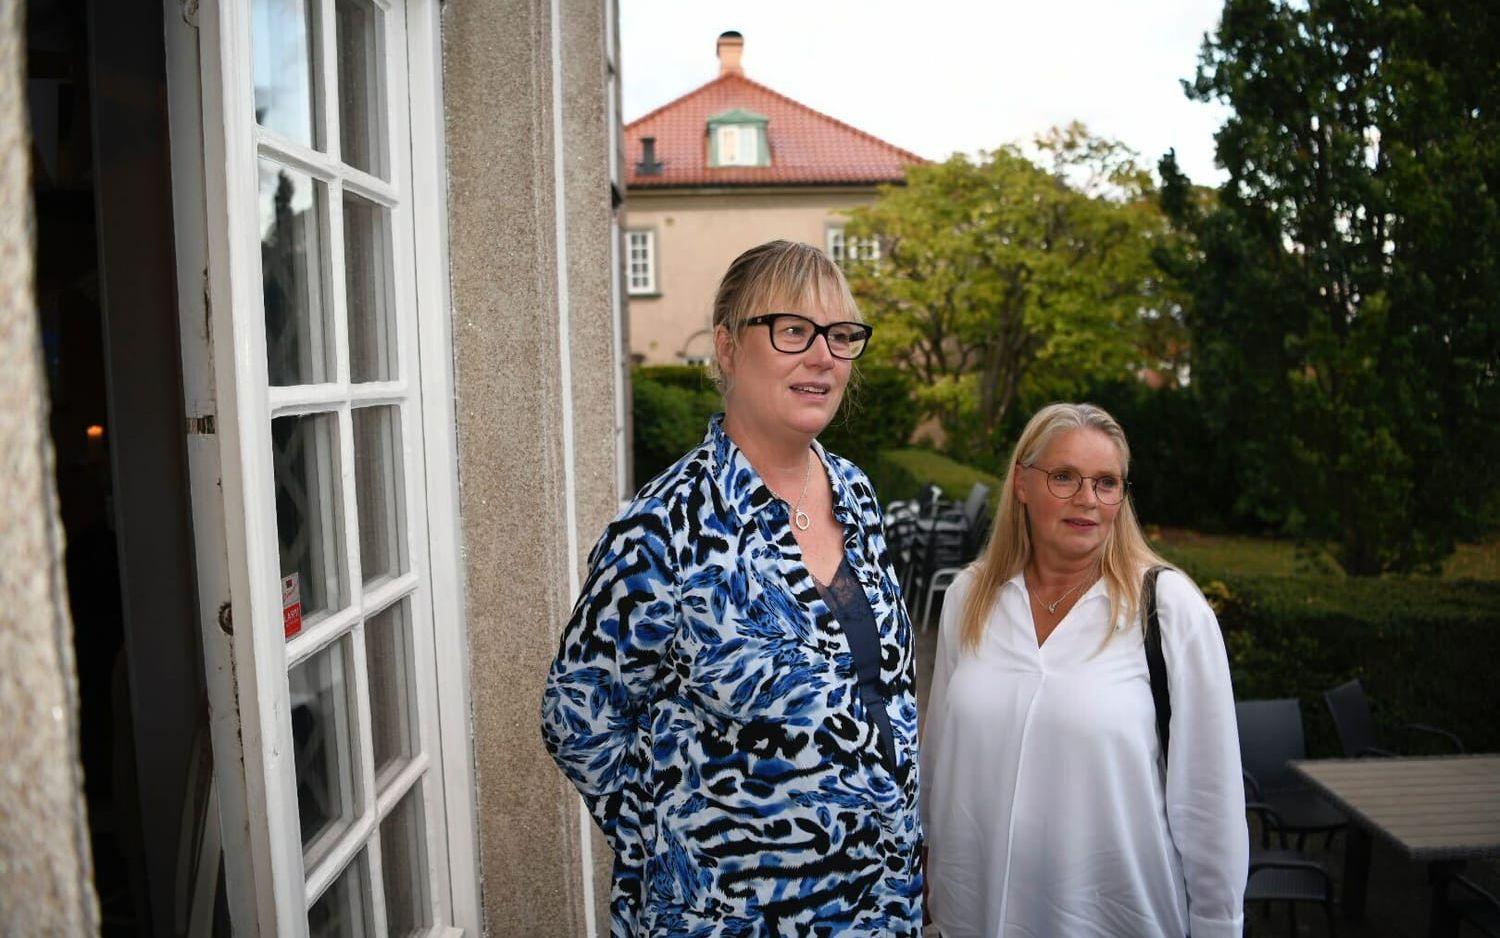 På Moderaternas valvaka: Mikaela Waltersson, listetta i regionvalet, och Anna Fallkvist, etta i kommunvalet i Halmstad.